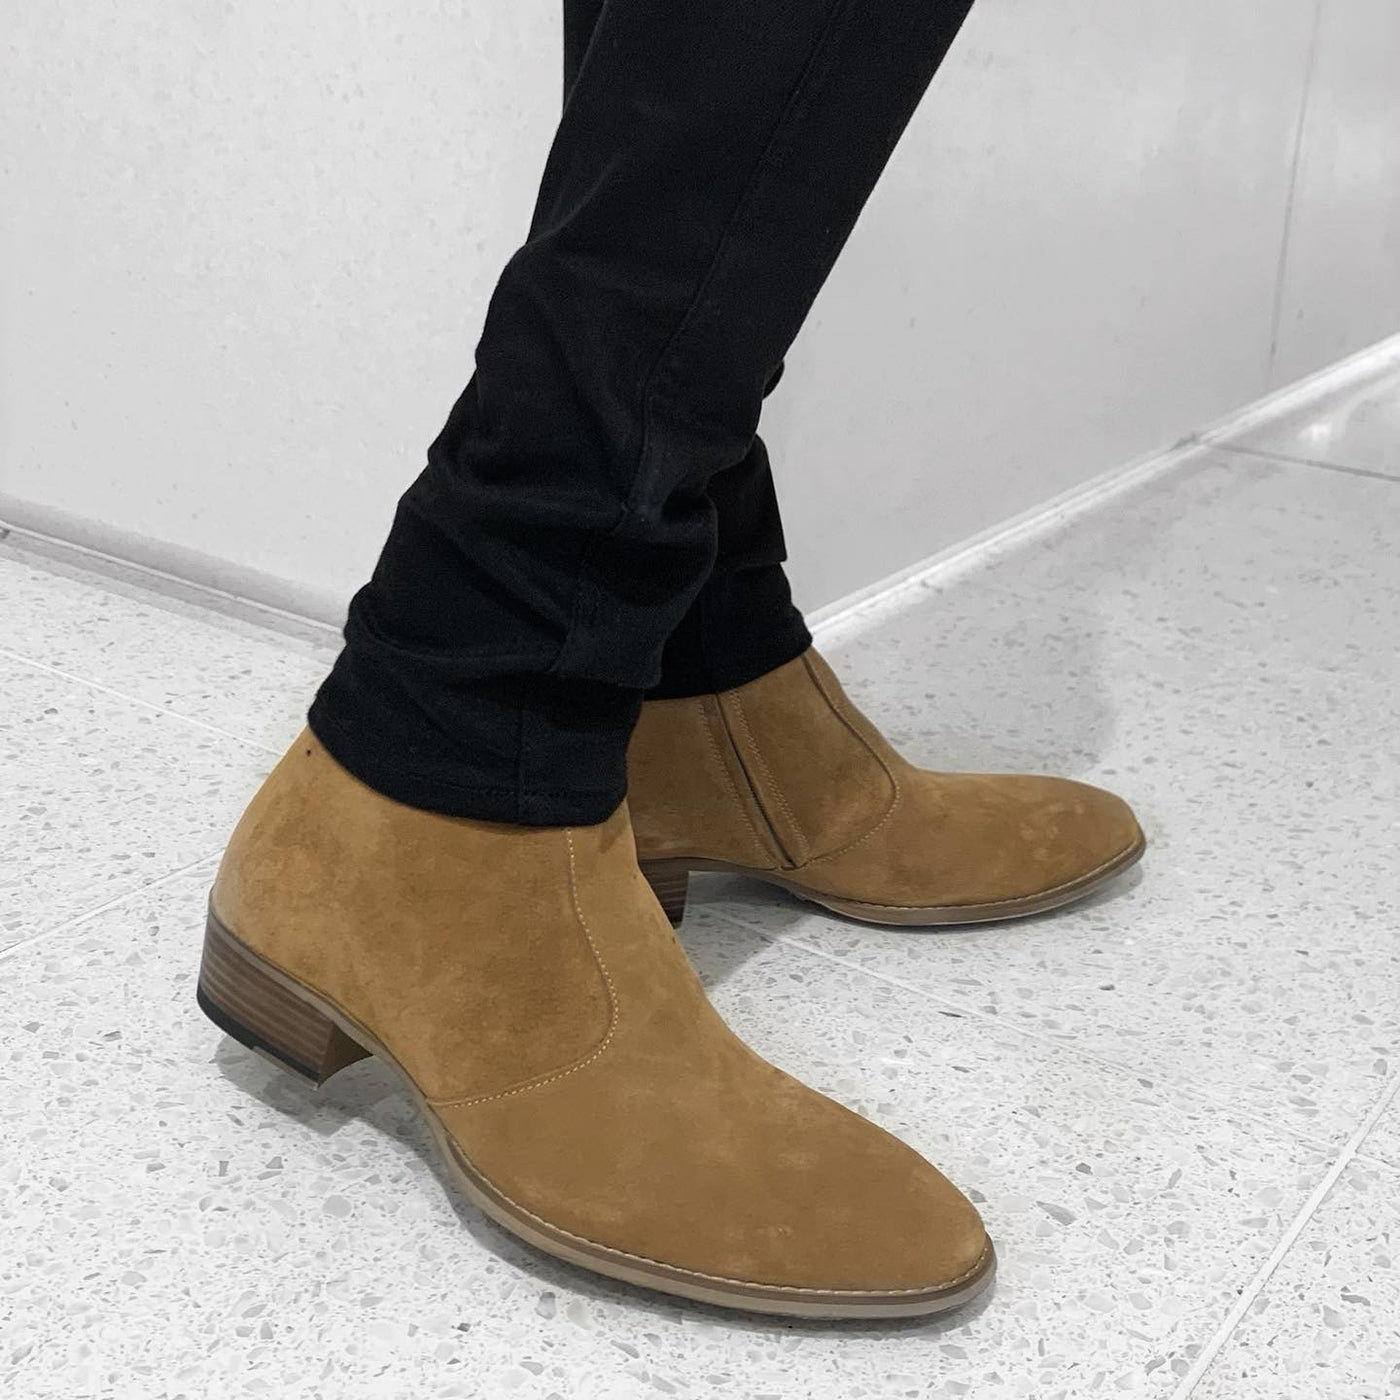 PANERO 40mm heel boots “Suede” (Brown)